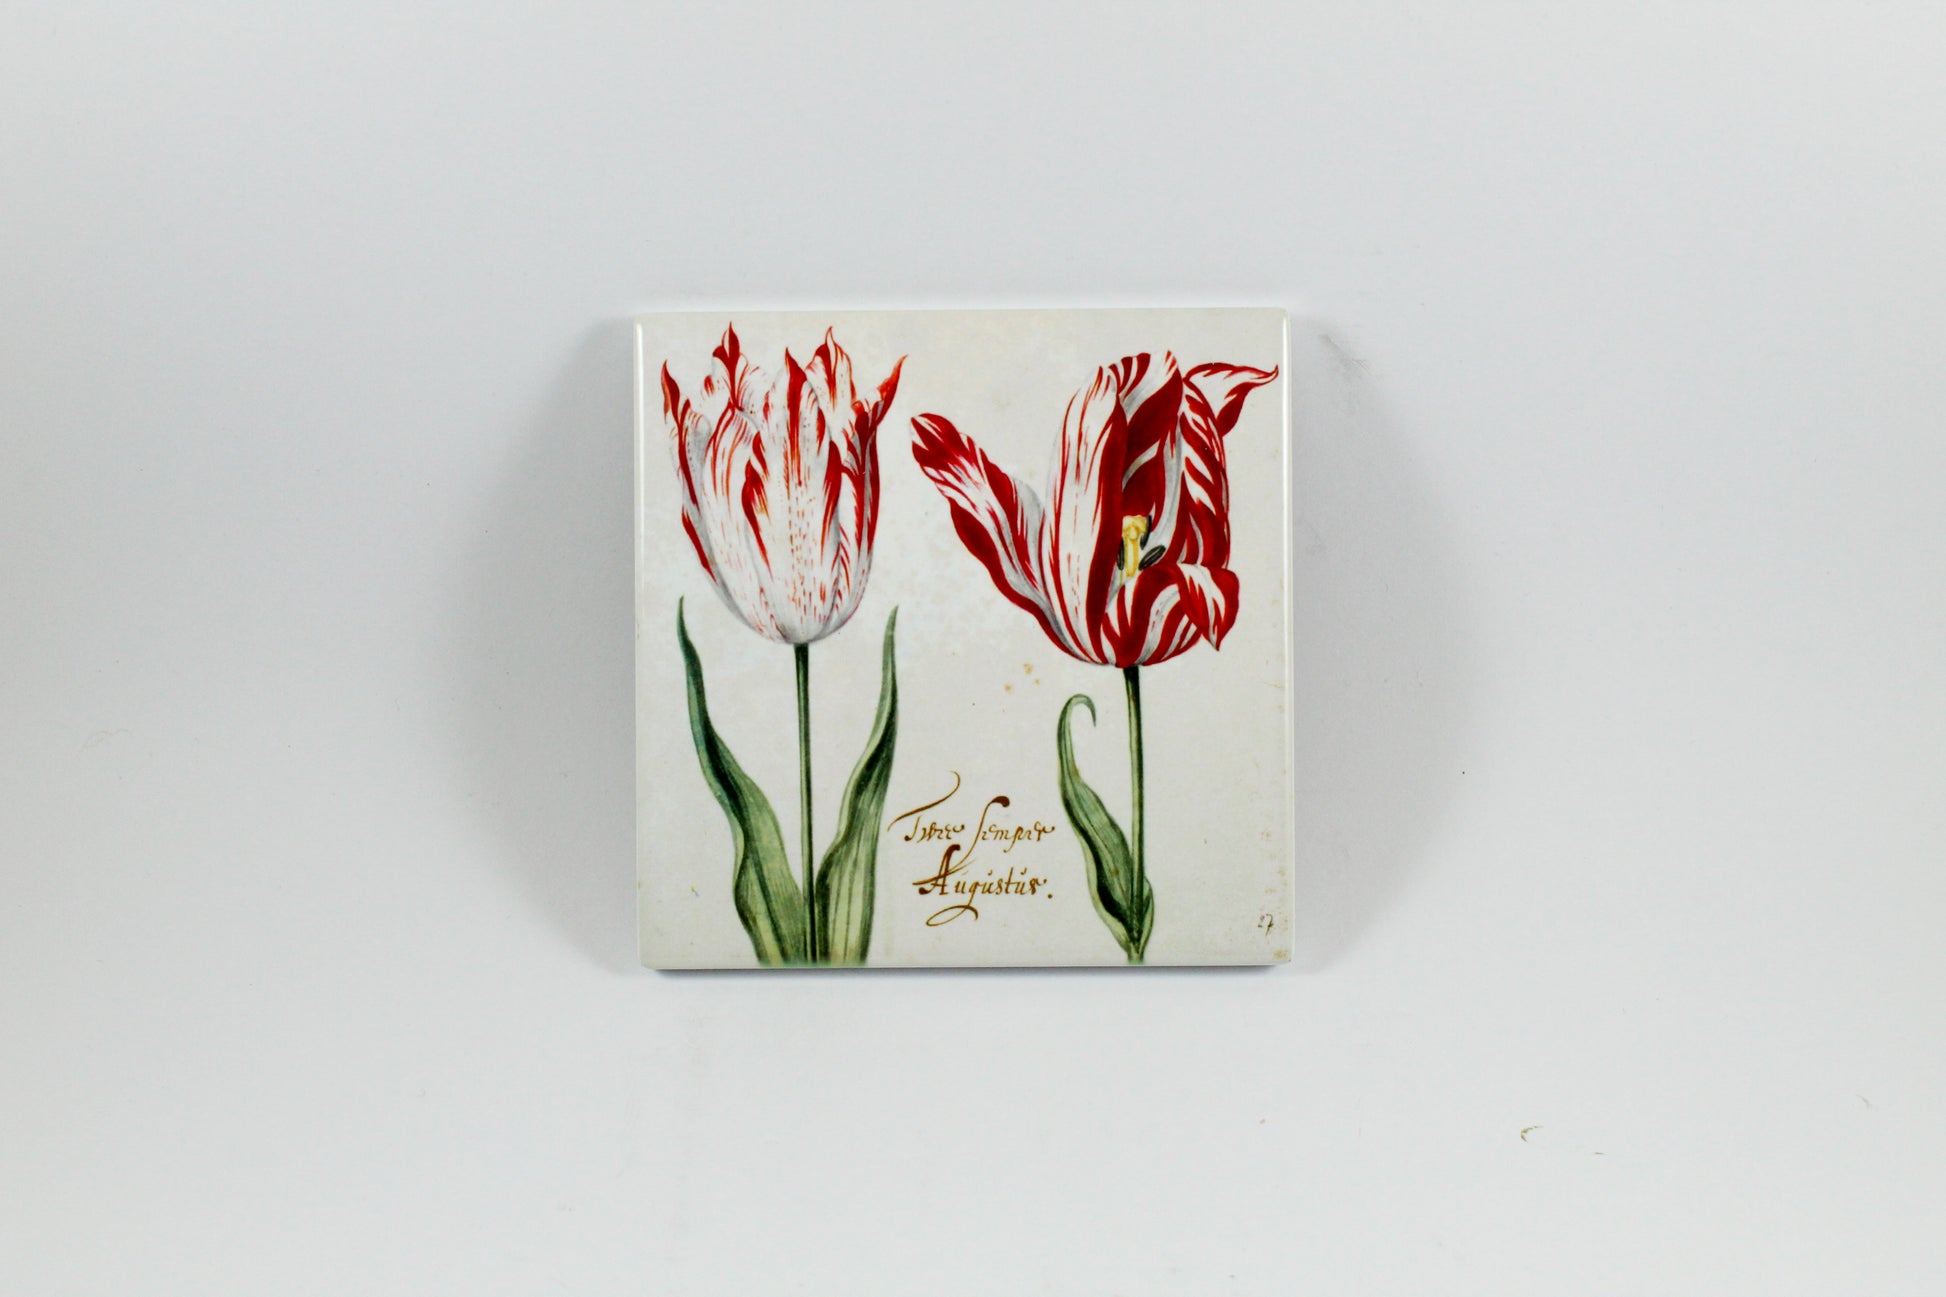 Amsterdam Tulip Museum Semper Augustus Tulip On White Ceramic Coaster